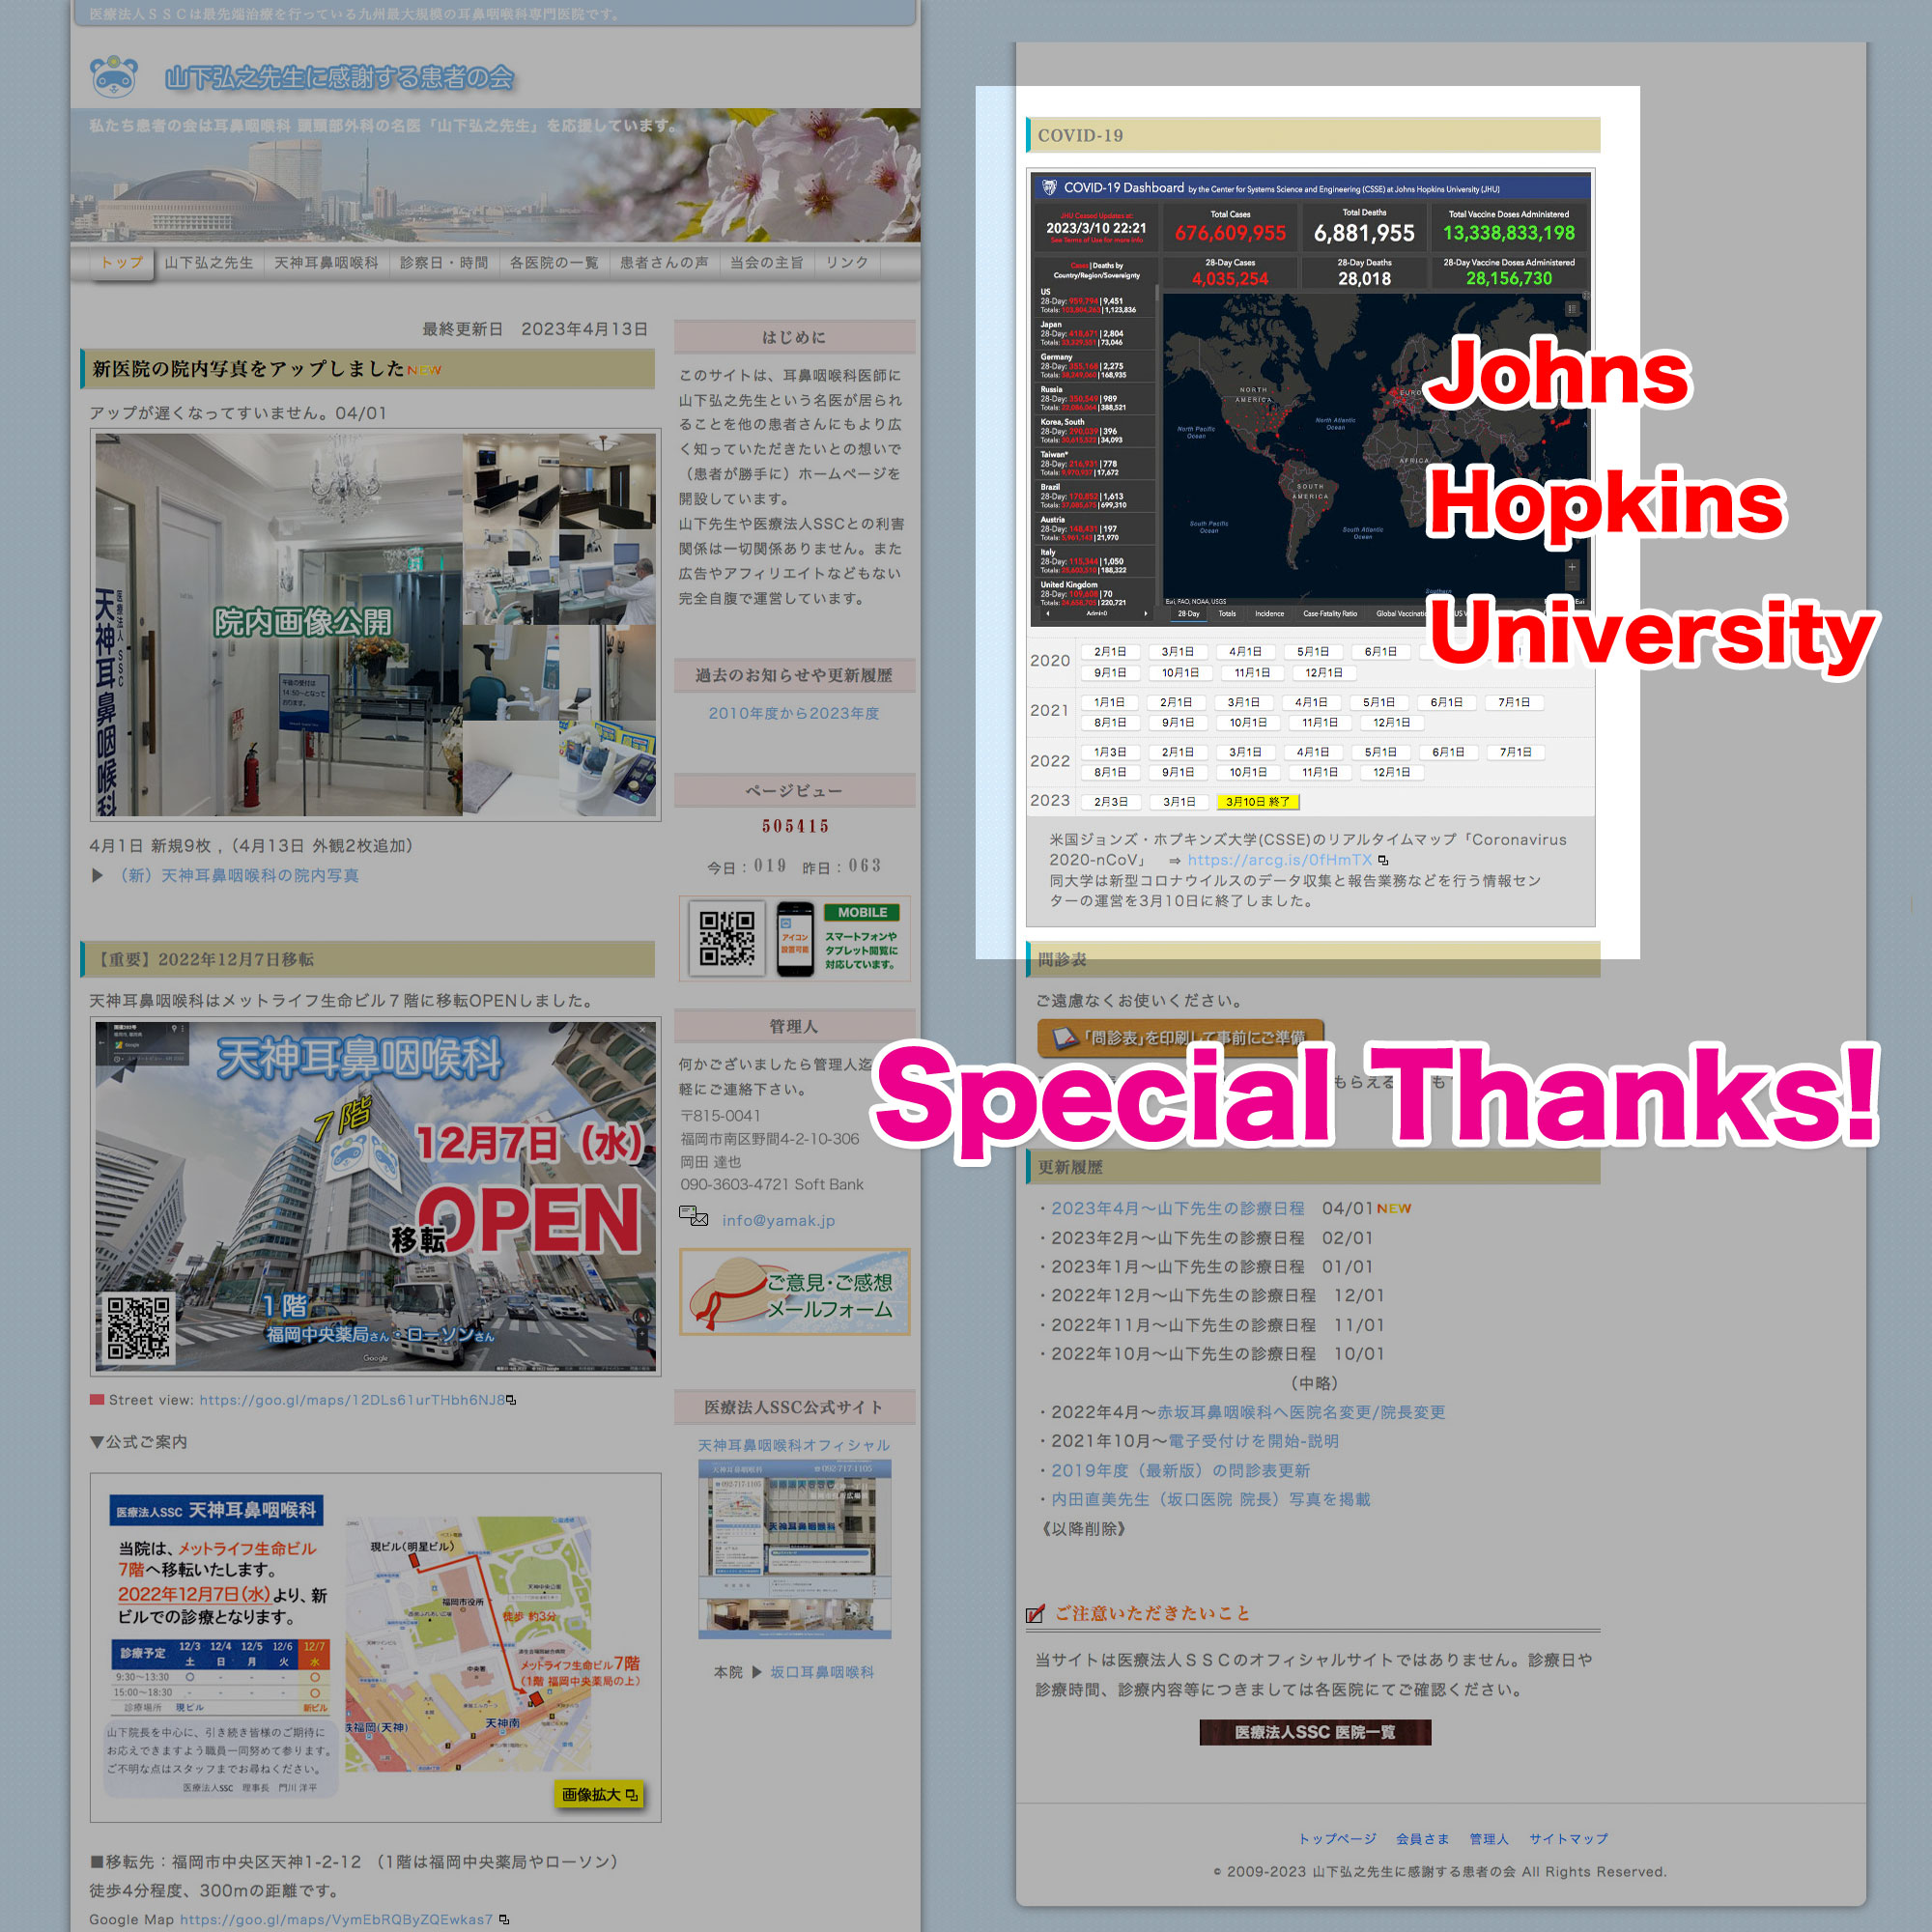 Johns Hopkins University Spesial Thanks!